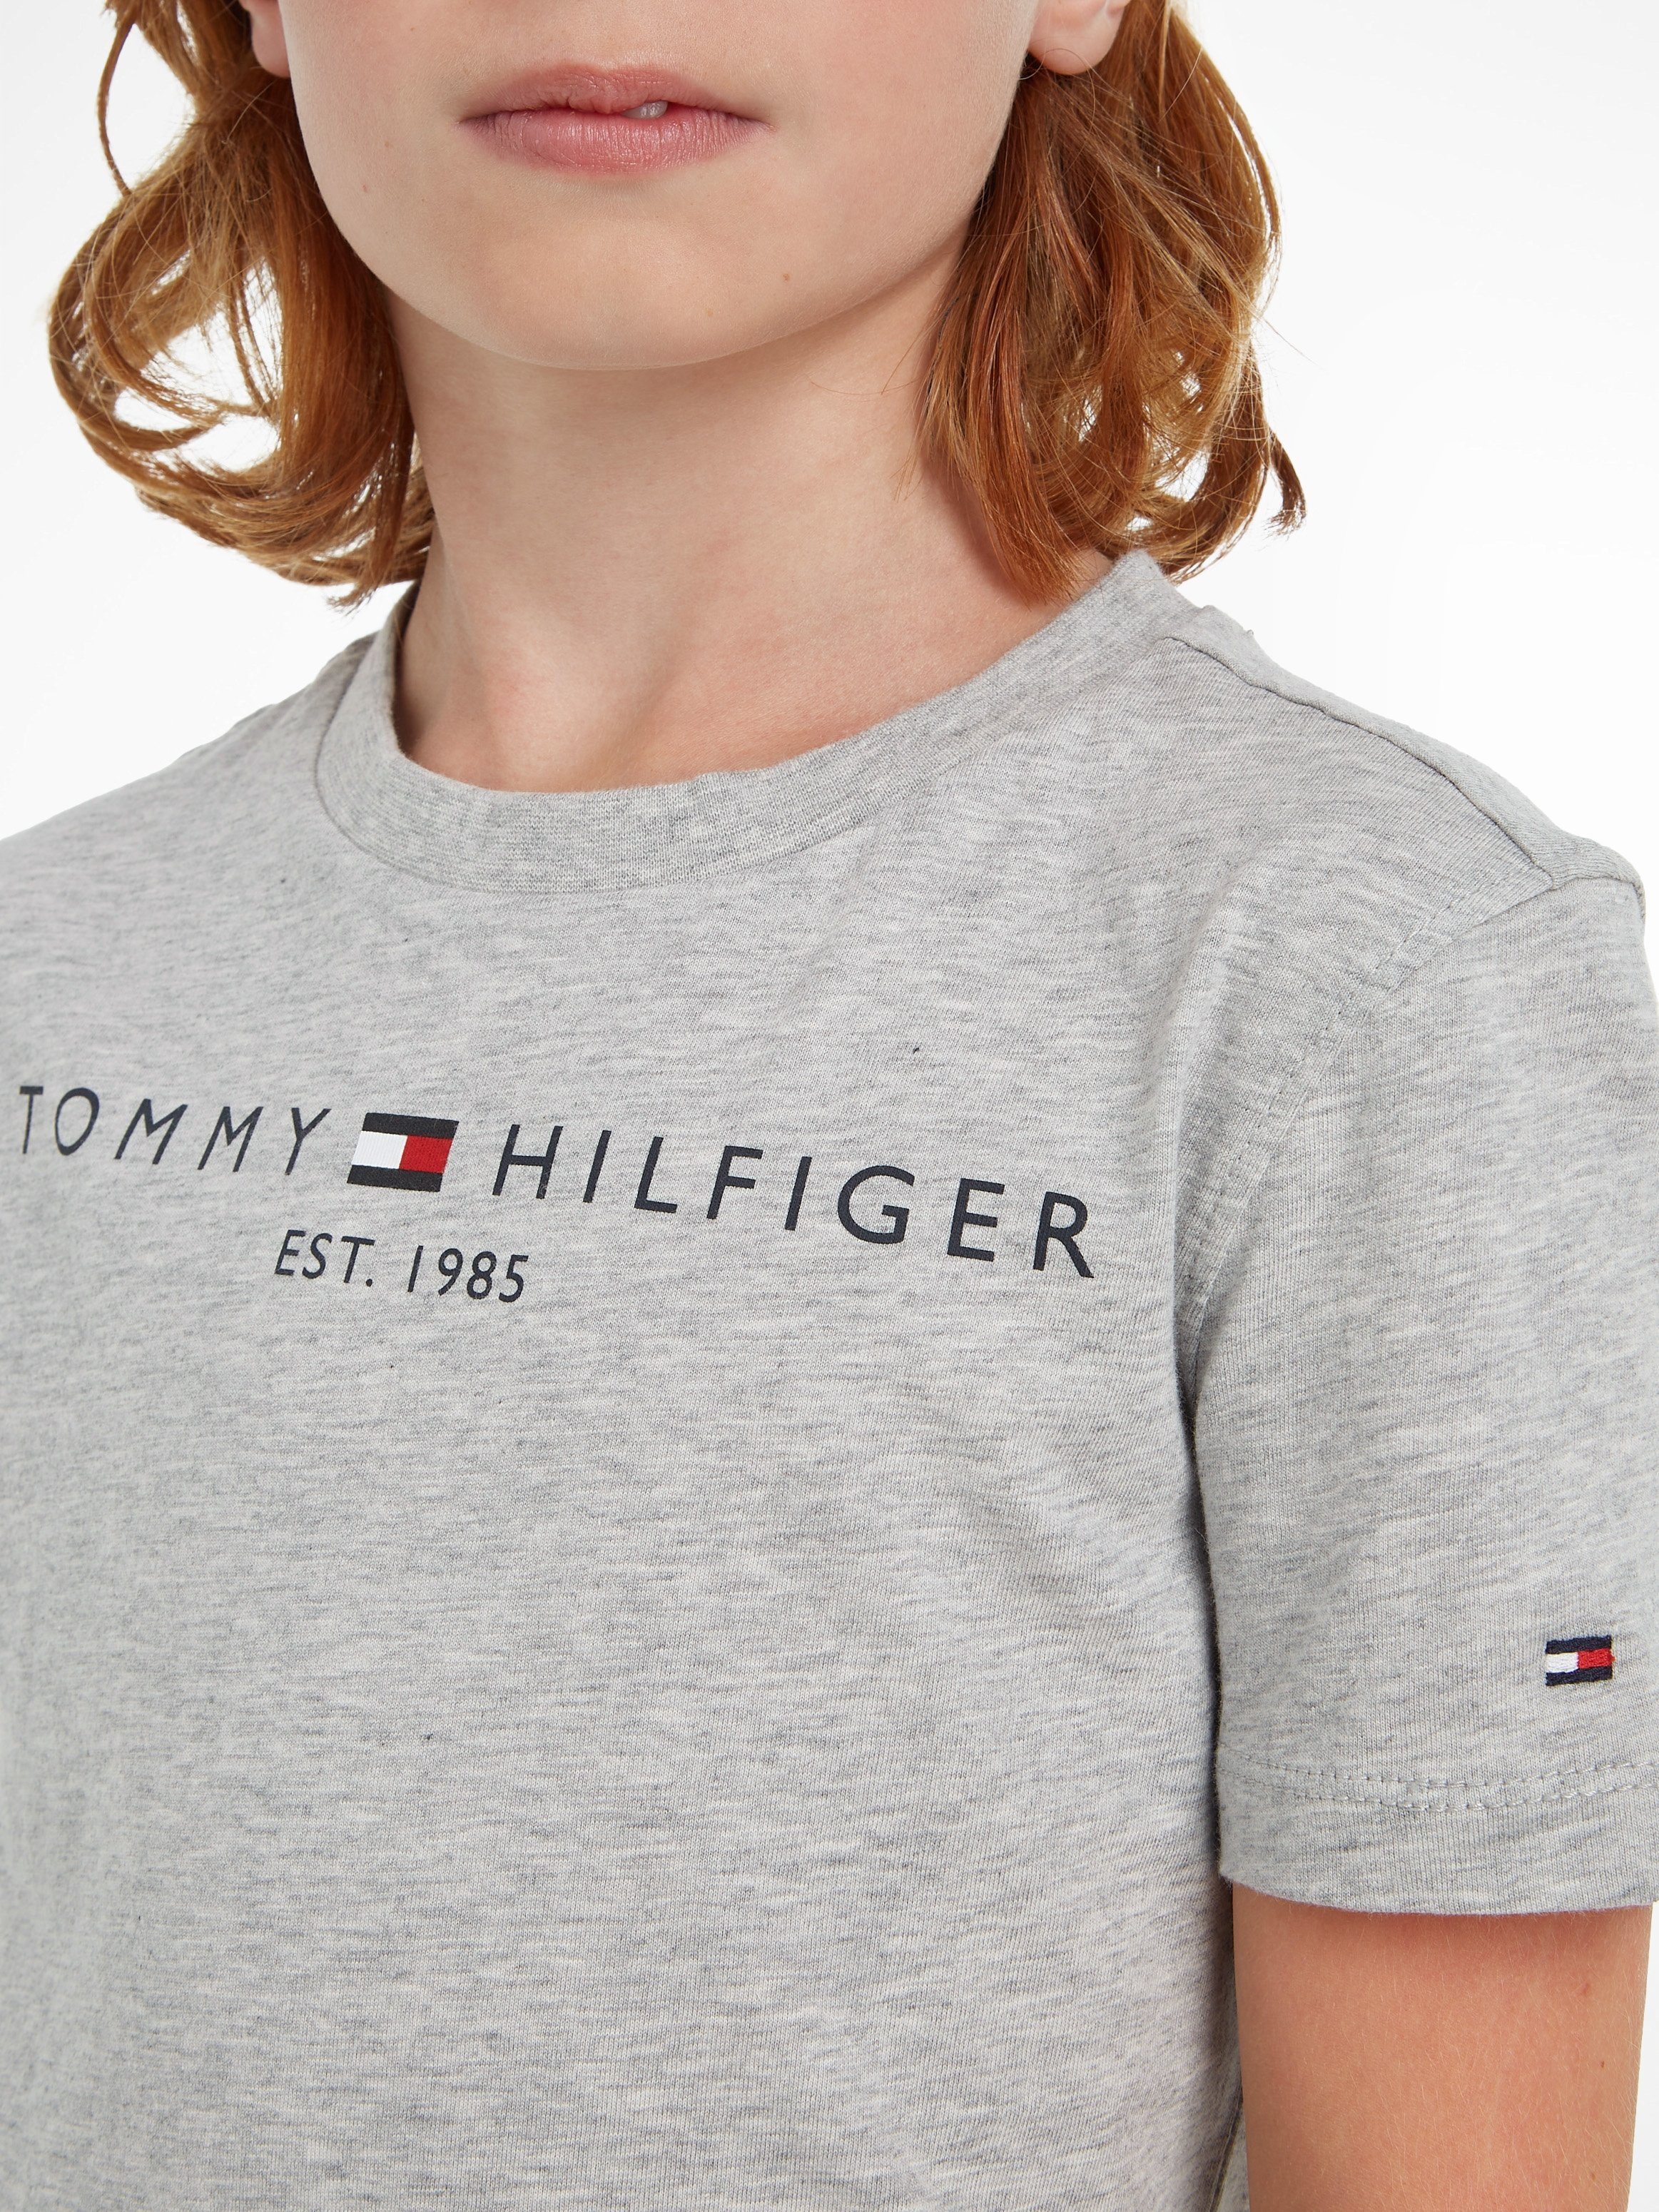 Tommy Hilfiger Mädchen Kids Jungen MiniMe,für Kinder TEE ESSENTIAL und Junior T-Shirt